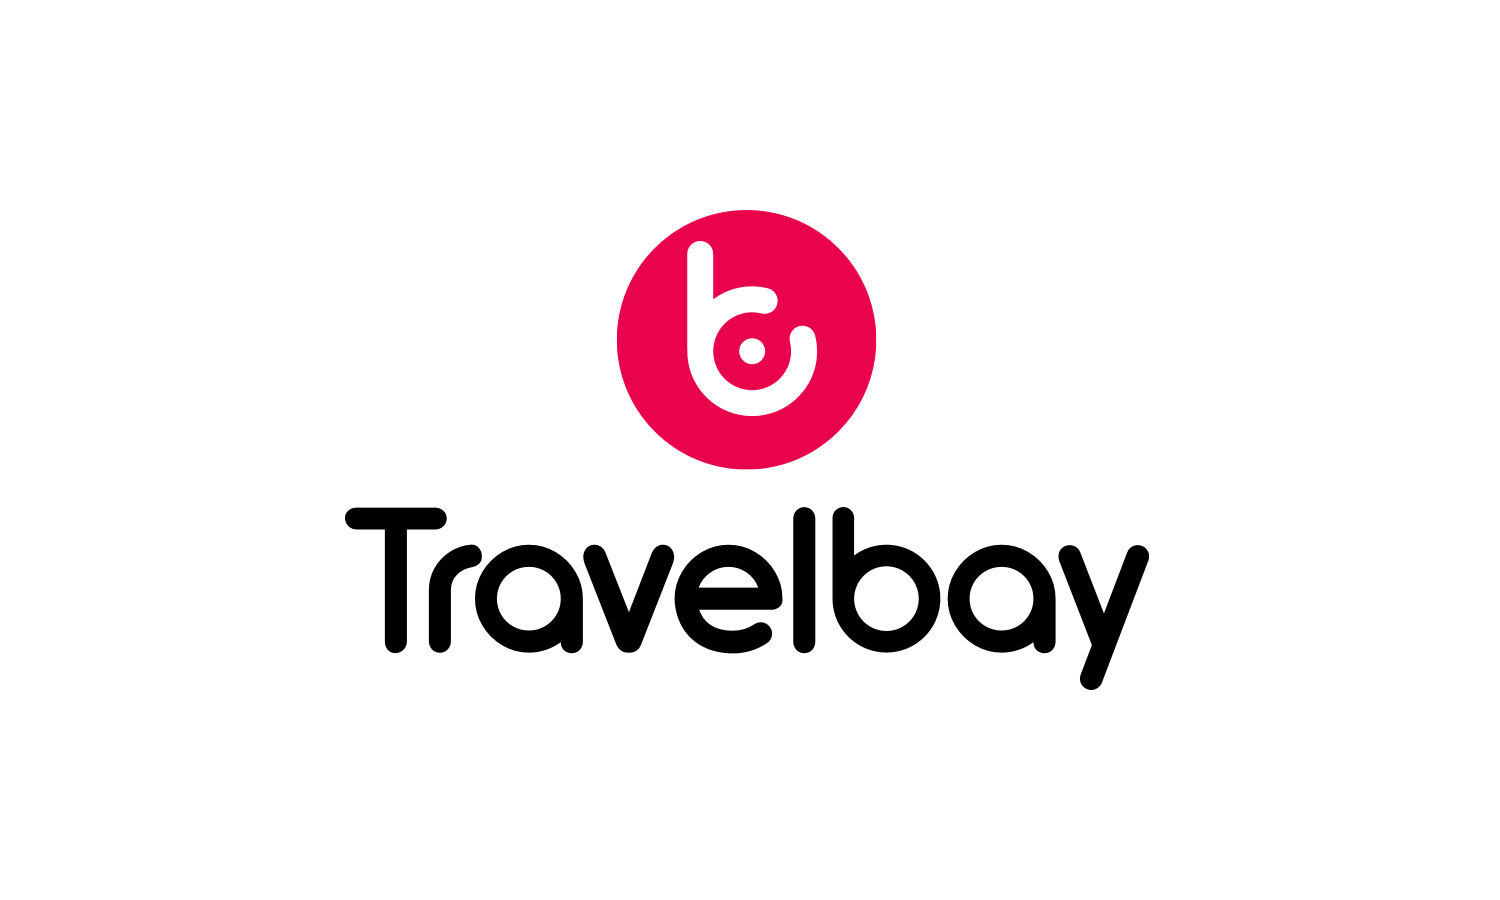 travelbay logo vertical